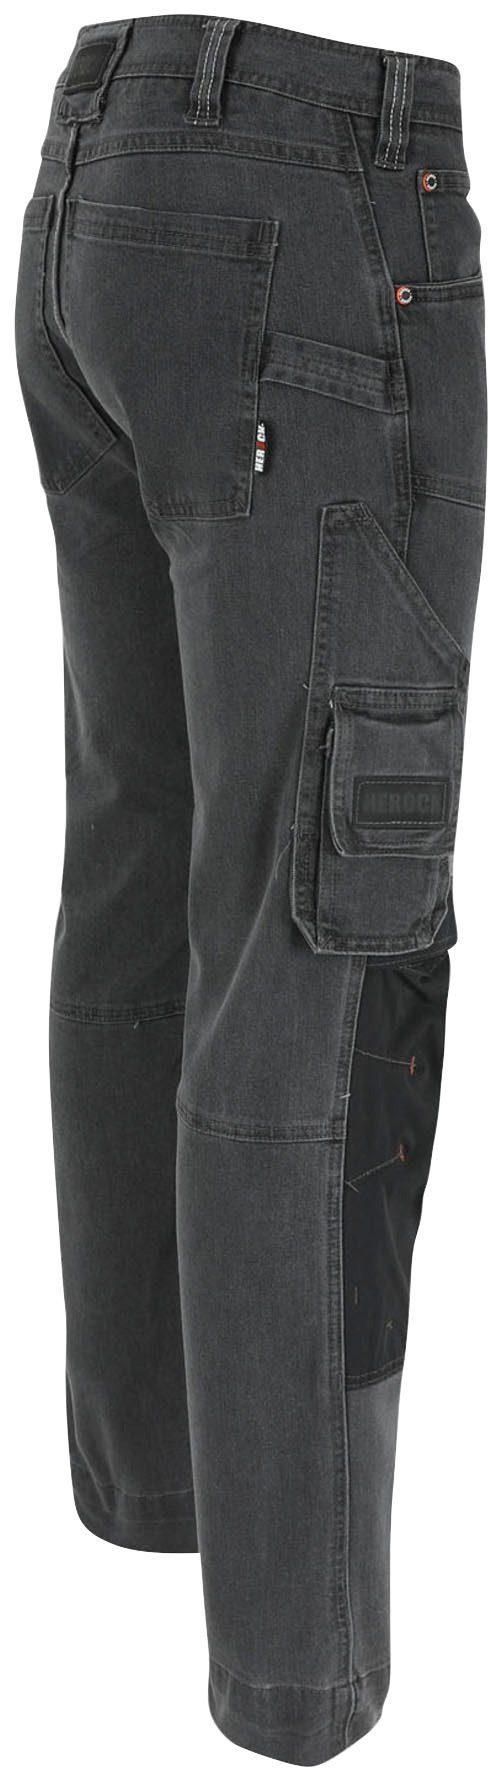 Stretch-Jeanshose, mit mehreren Sphinx Taschen, und Arbeitshose Herock Hoses Thermolite® Coolmax®